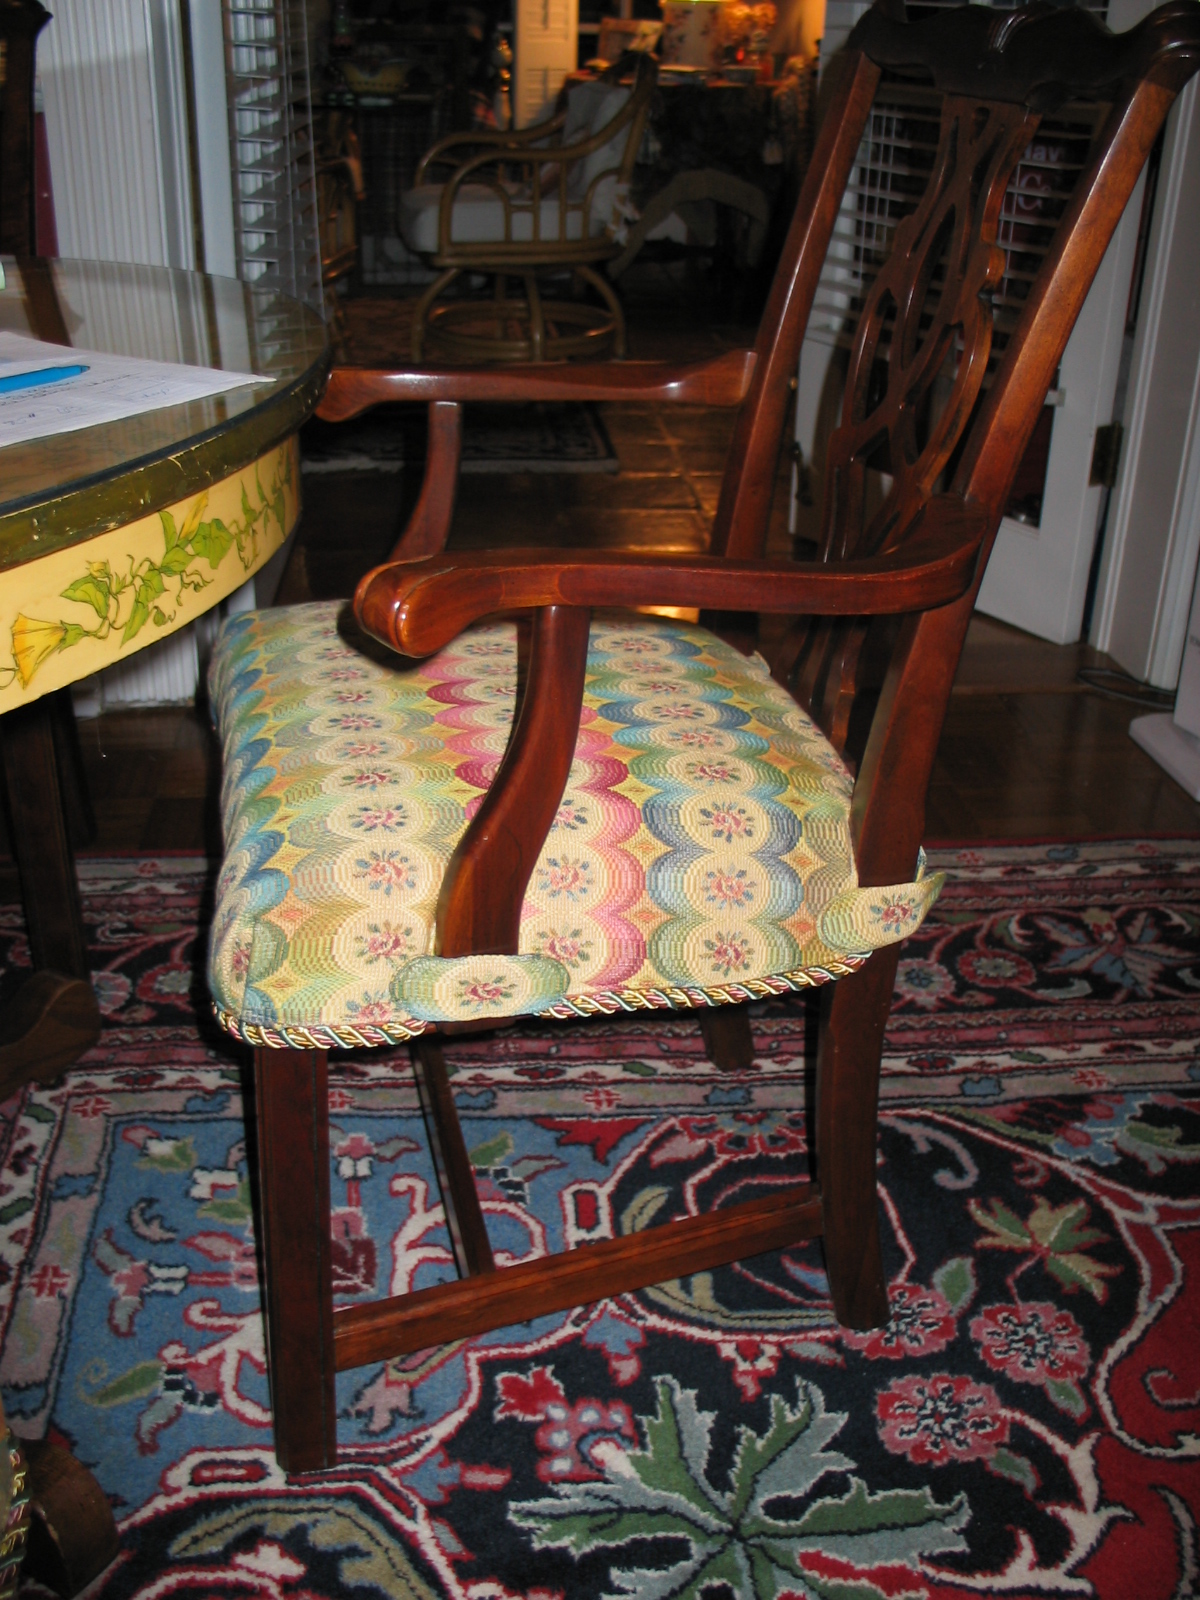 Elainahill jacksonville st johns custom drapery pillows slipcovers upholstery dining chair